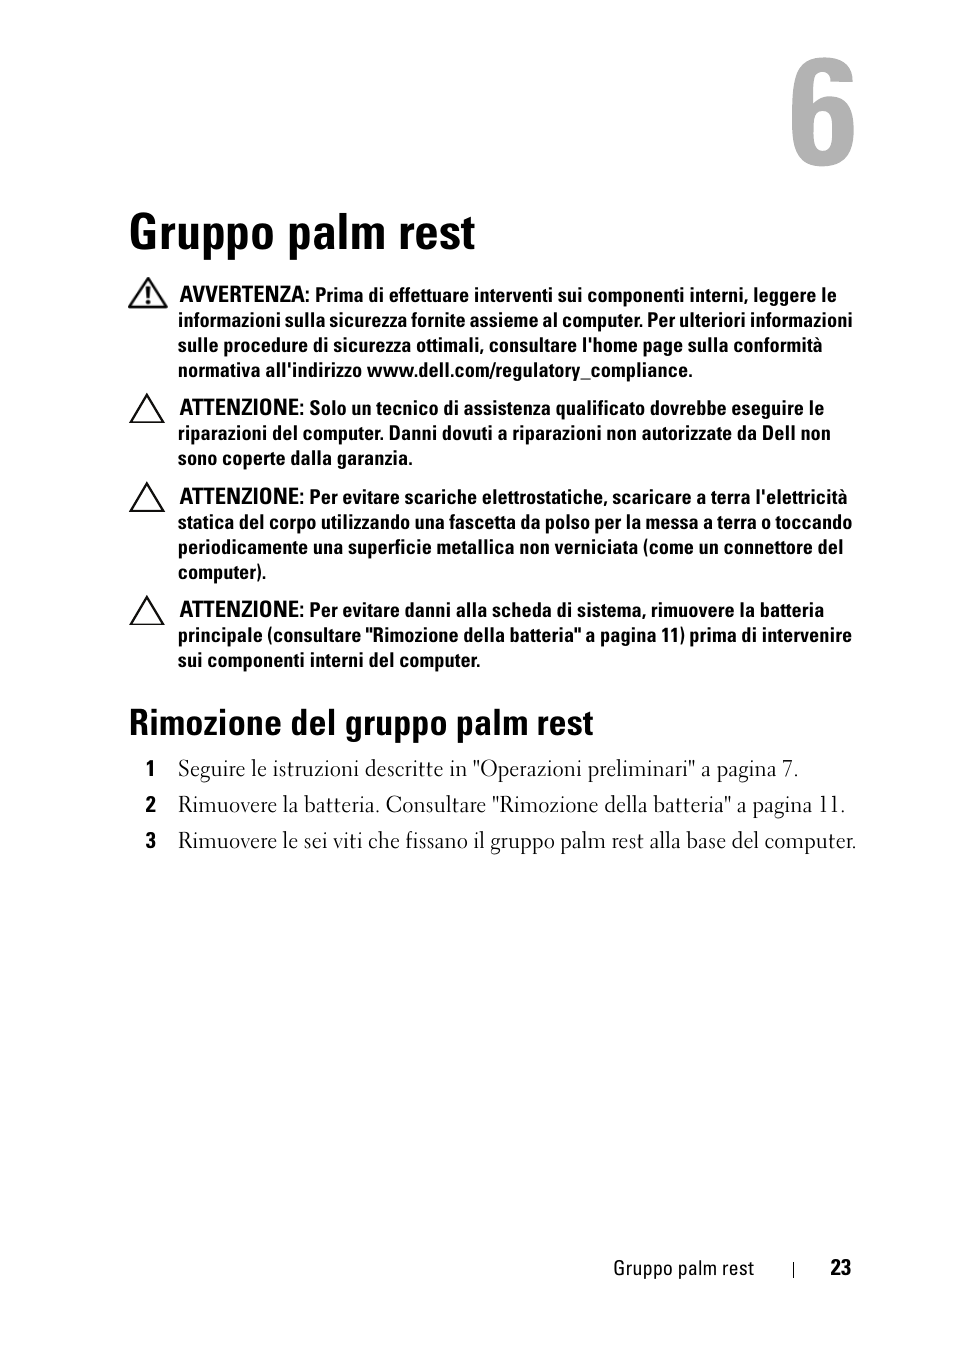 Gruppo palm rest, Rimozione del gruppo palm rest | Dell Inspiron 14 (M4040, Mid 2011) Manuale d'uso | Pagina 23 / 74